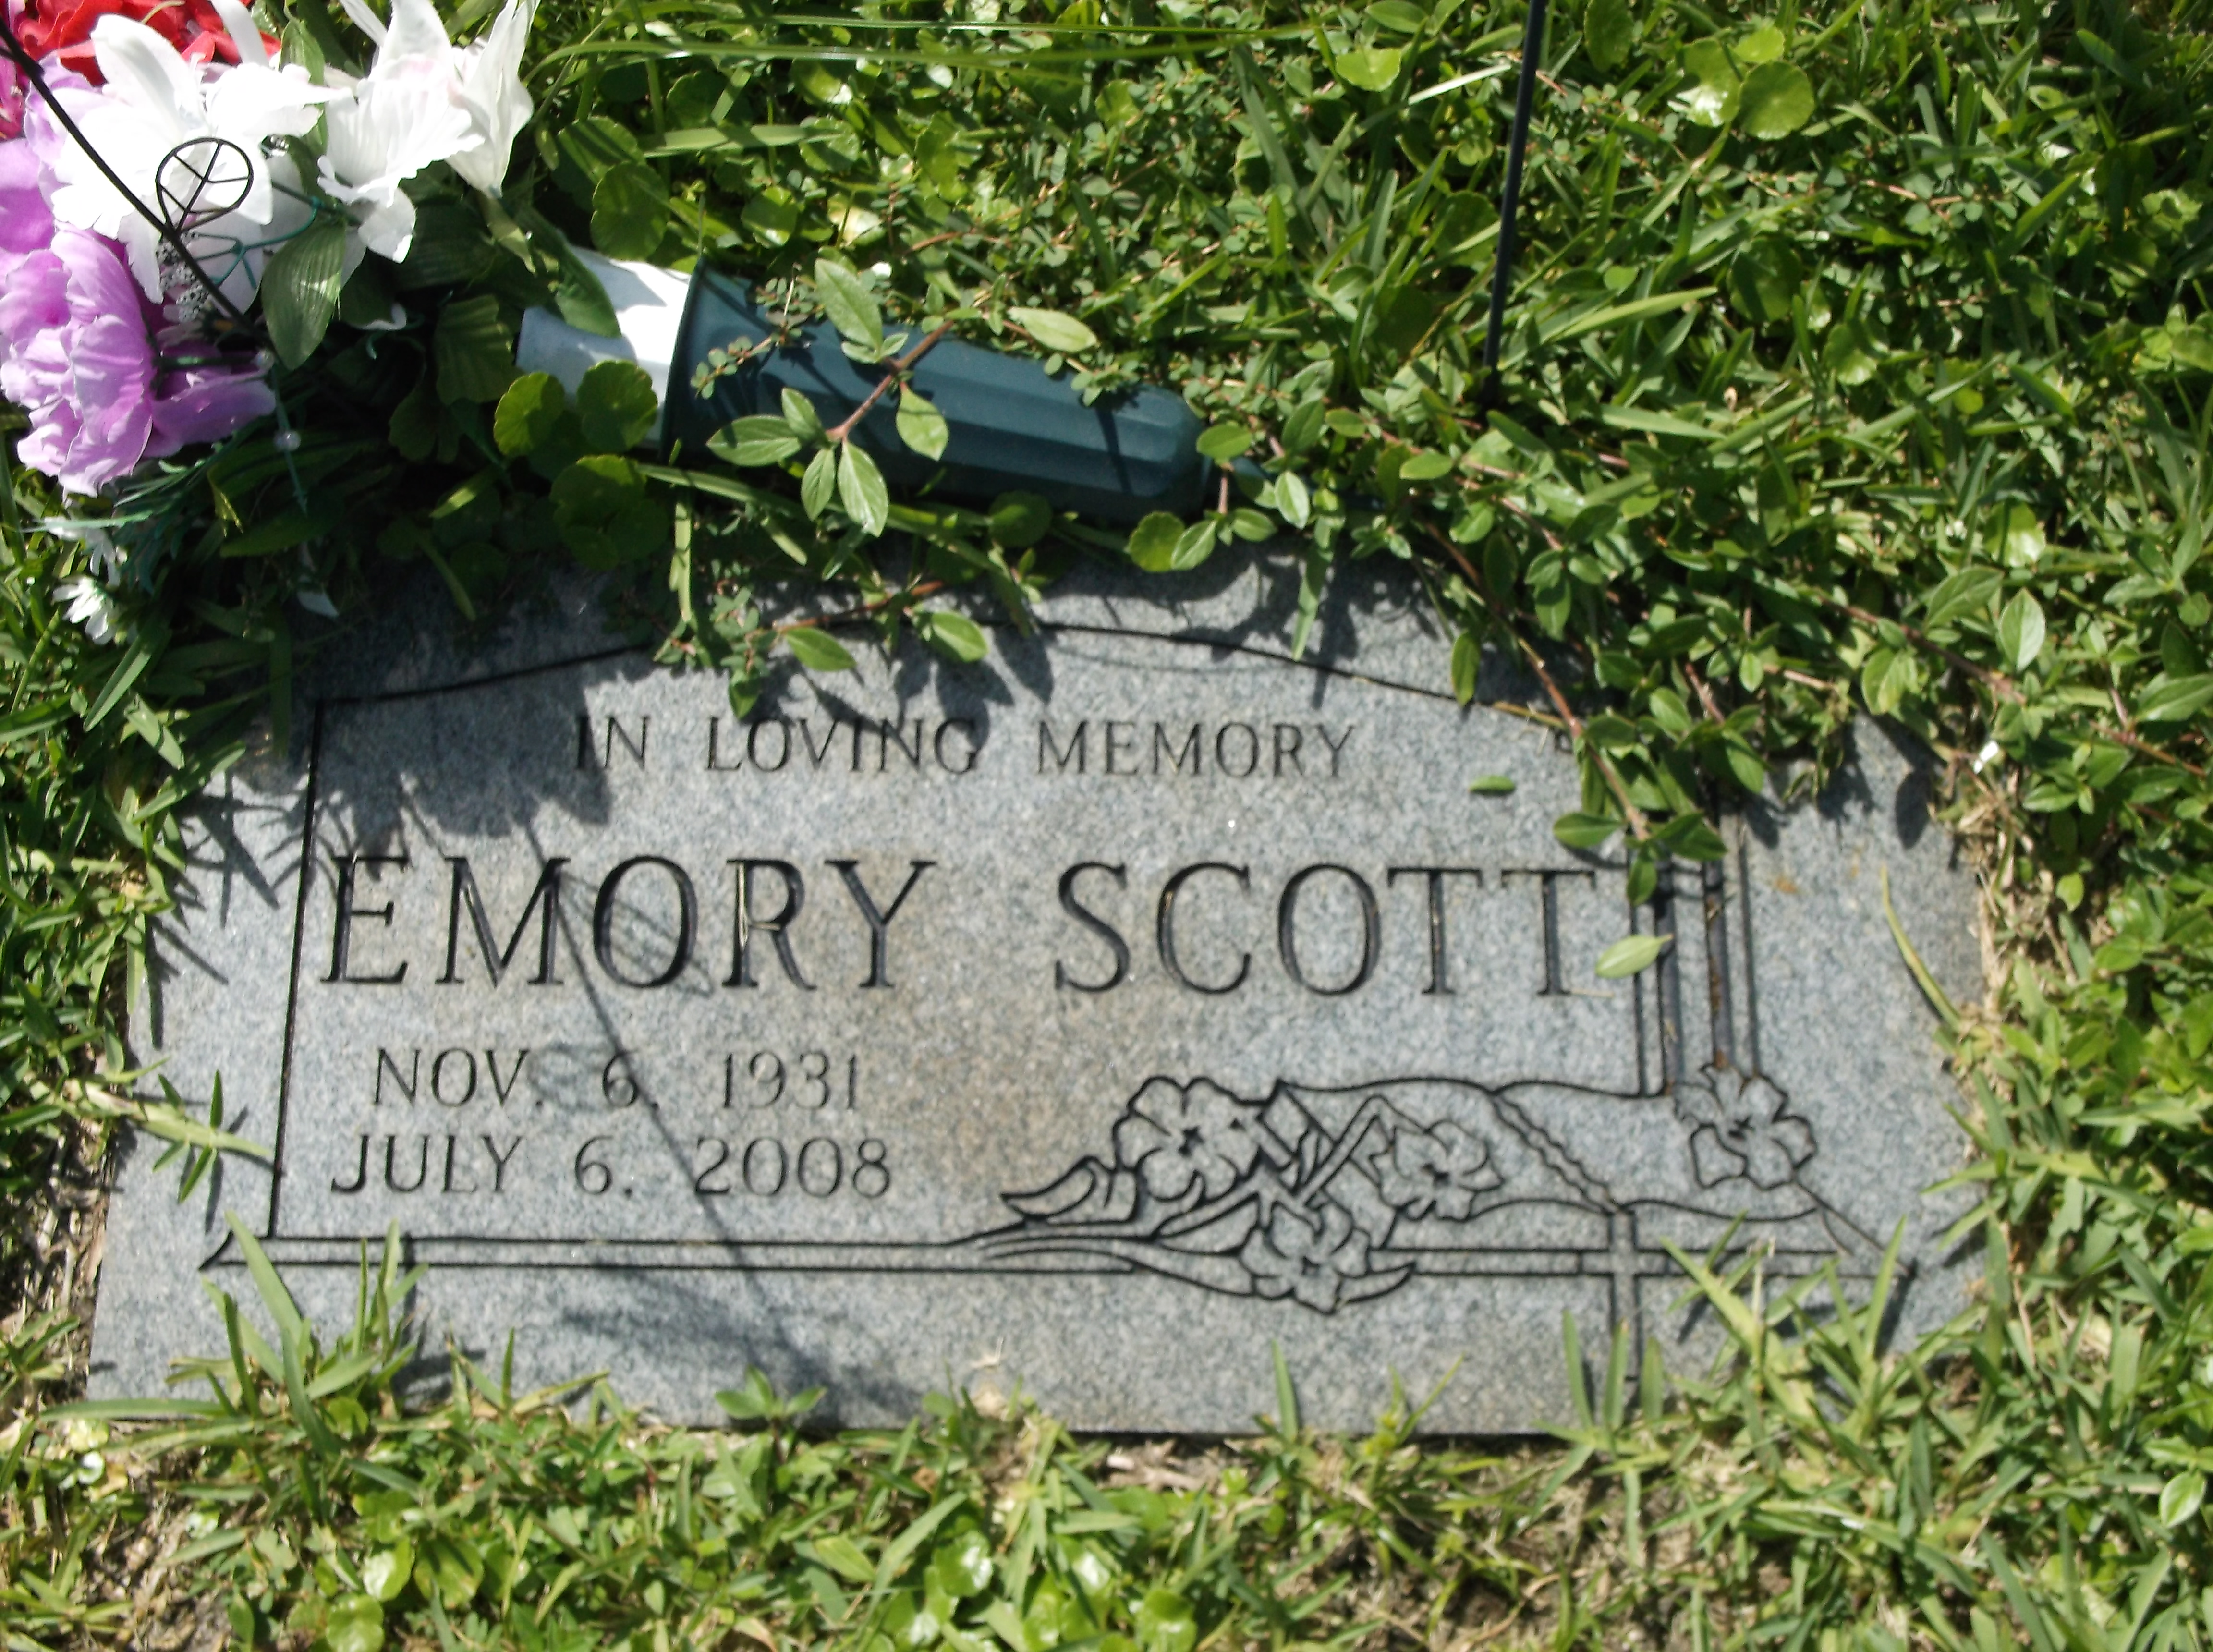 Emory Scott